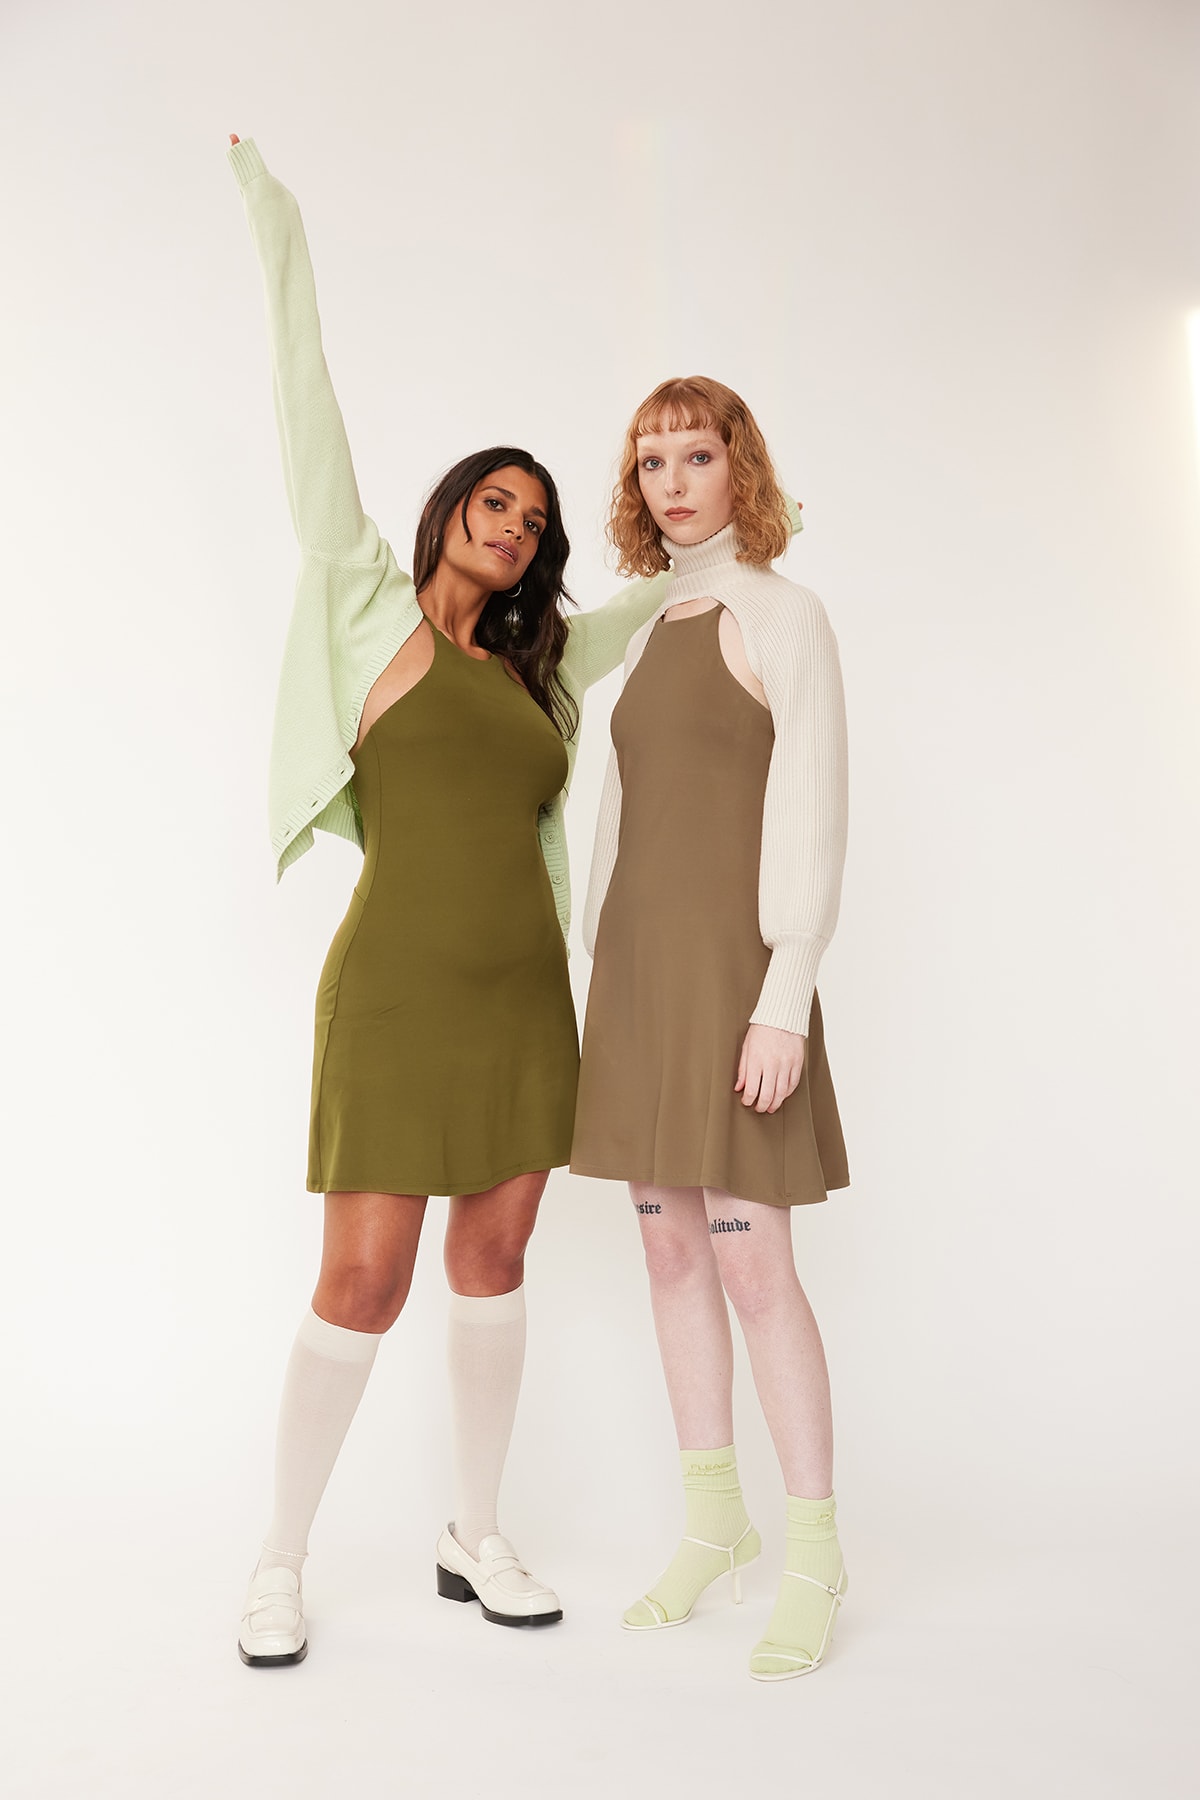 Girlfriend Collective Undress Workout Dress Green Tan